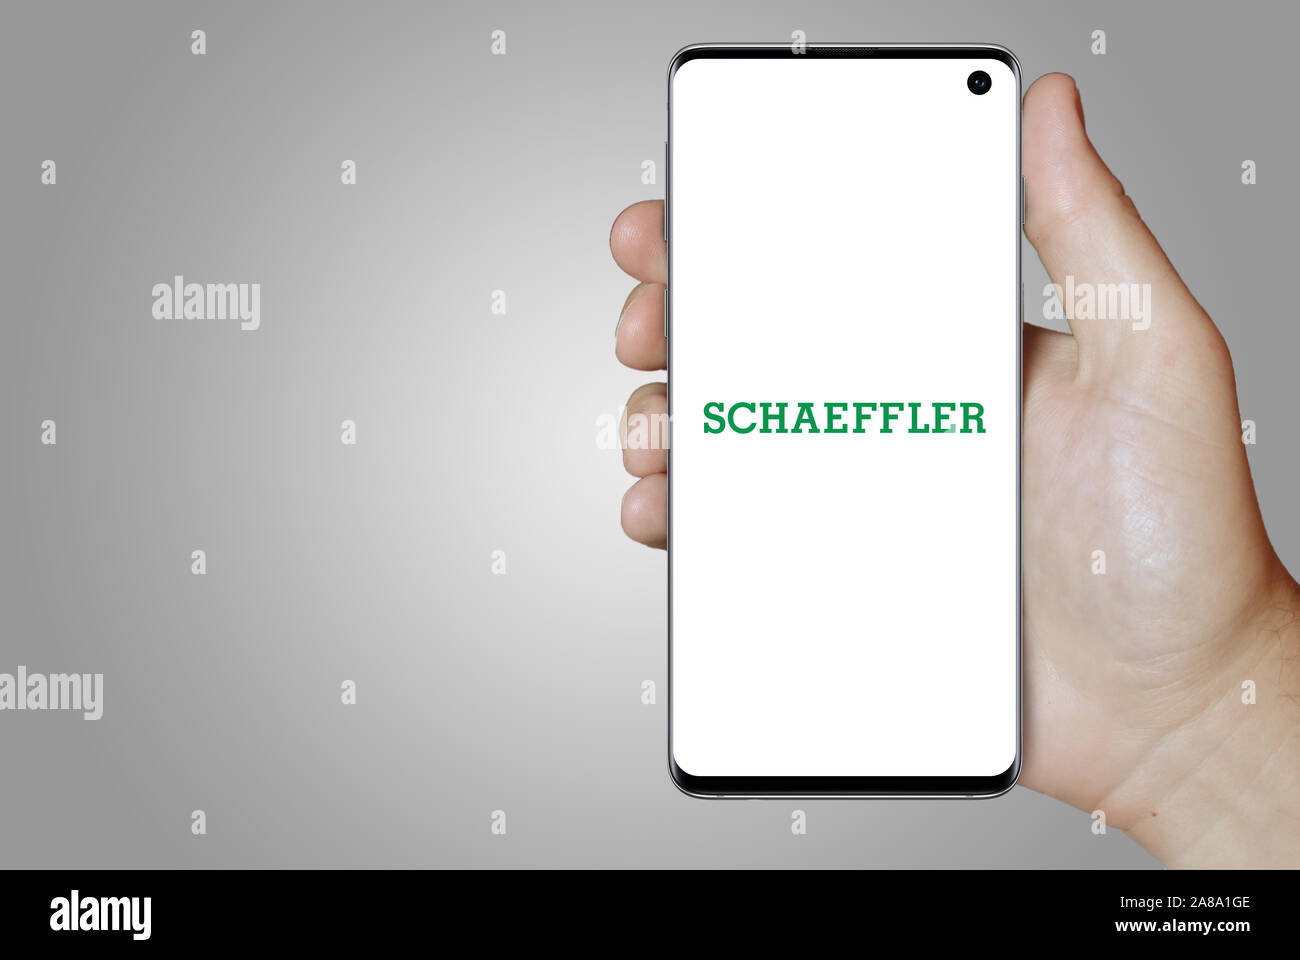 Logo der öffentlichen Unternehmen Schaeffler Technologies AG & Co.KG angezeigt auf einem Smartphone. Grauer Hintergrund. Credit: PIXDUCE Stockfoto